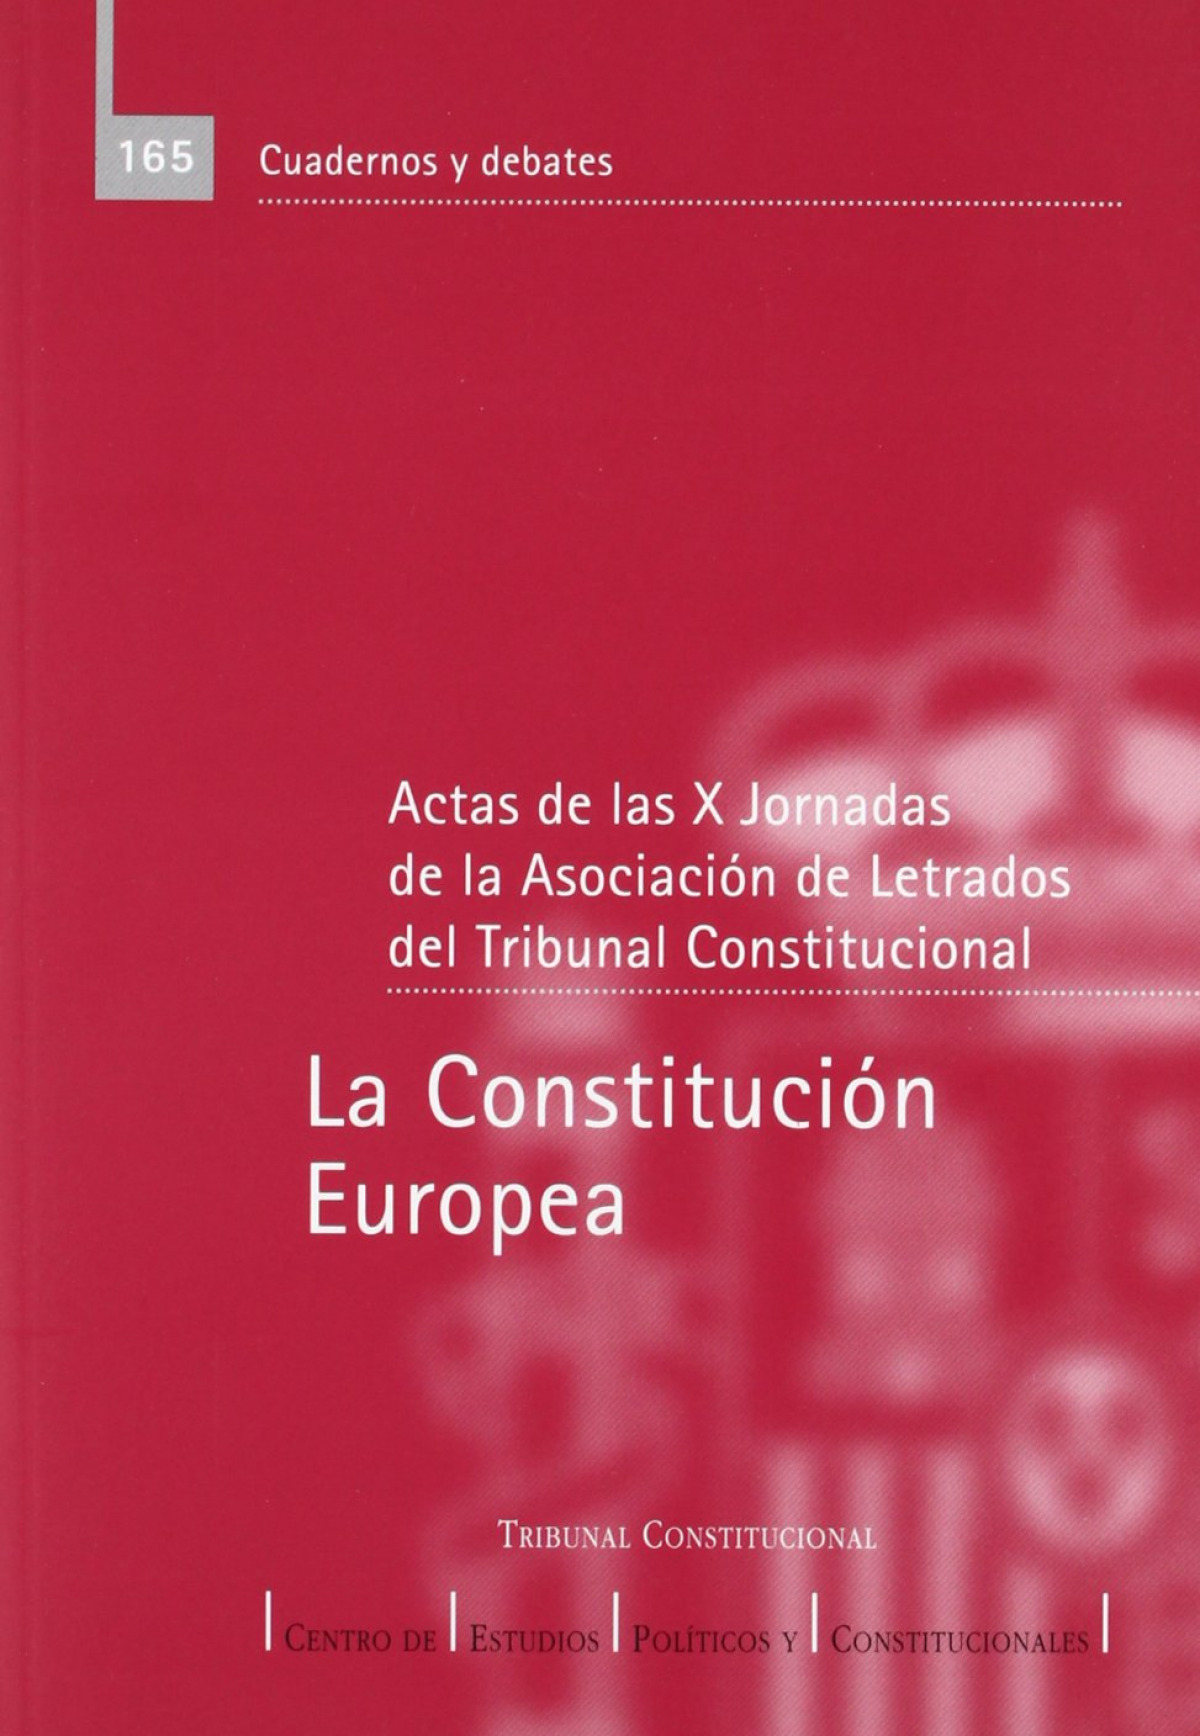 La Constitución Europea actas de las X Jornadas de la Asociación de Le - Asociación de Letrados del Tribunal Constitucional. Jornadas